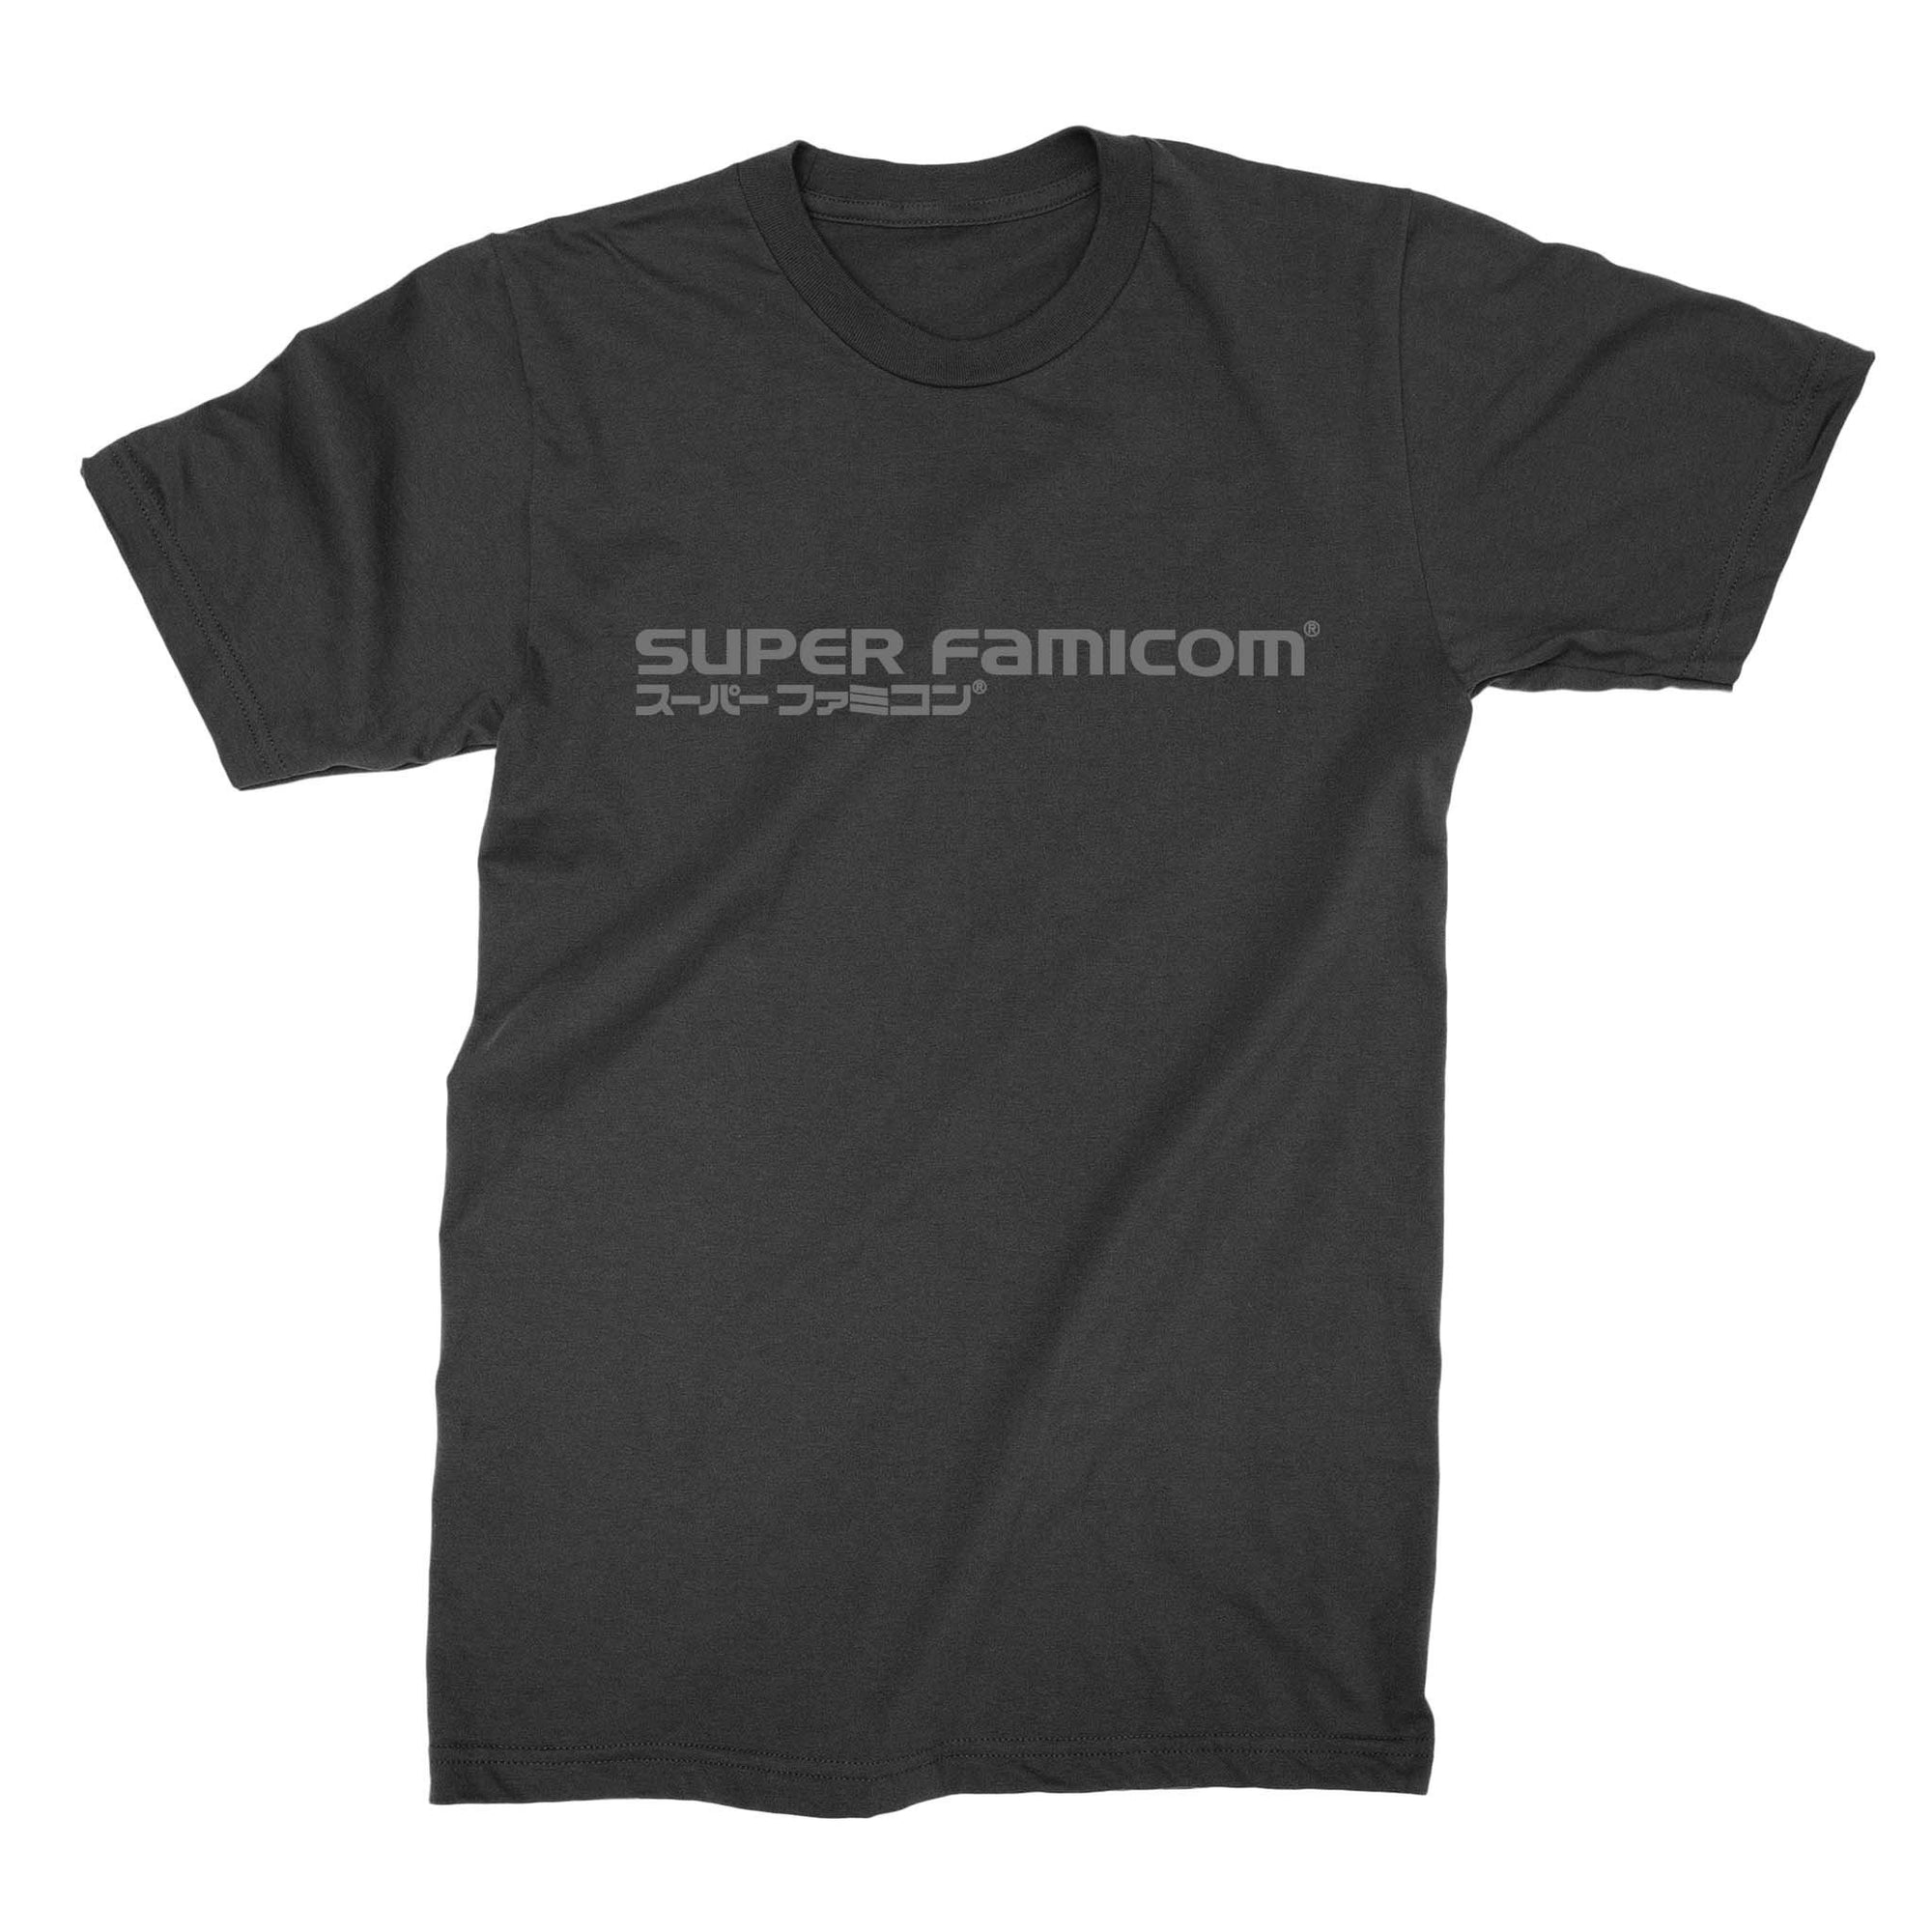 Super Famicom Shirt-T-Shirts-Shirtasaurus-Shirtasaurus